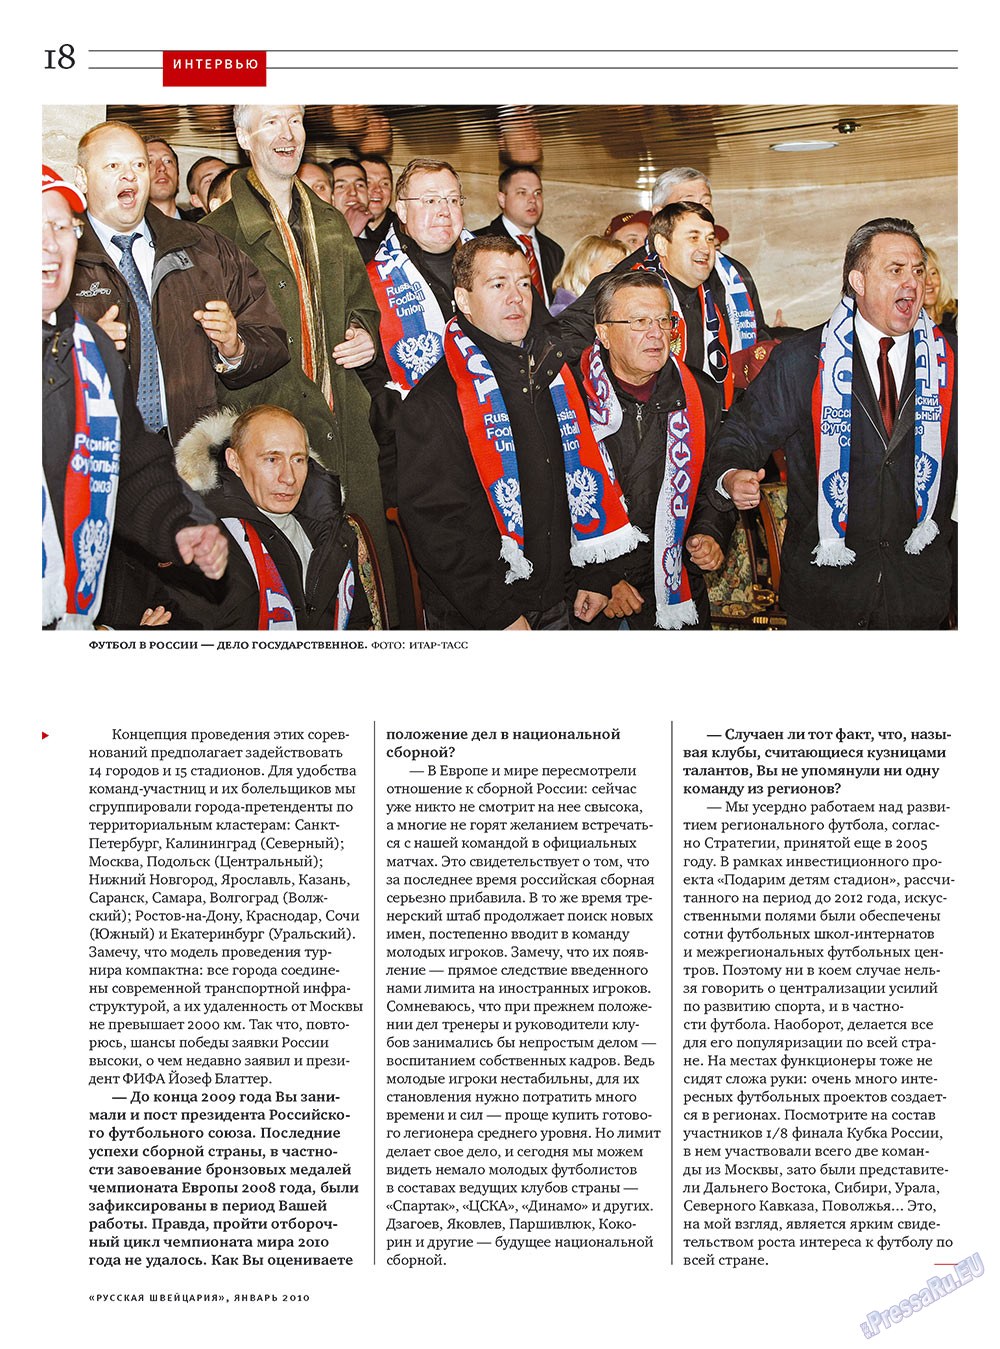 Русская Швейцария, журнал. 2010 №1 стр.18